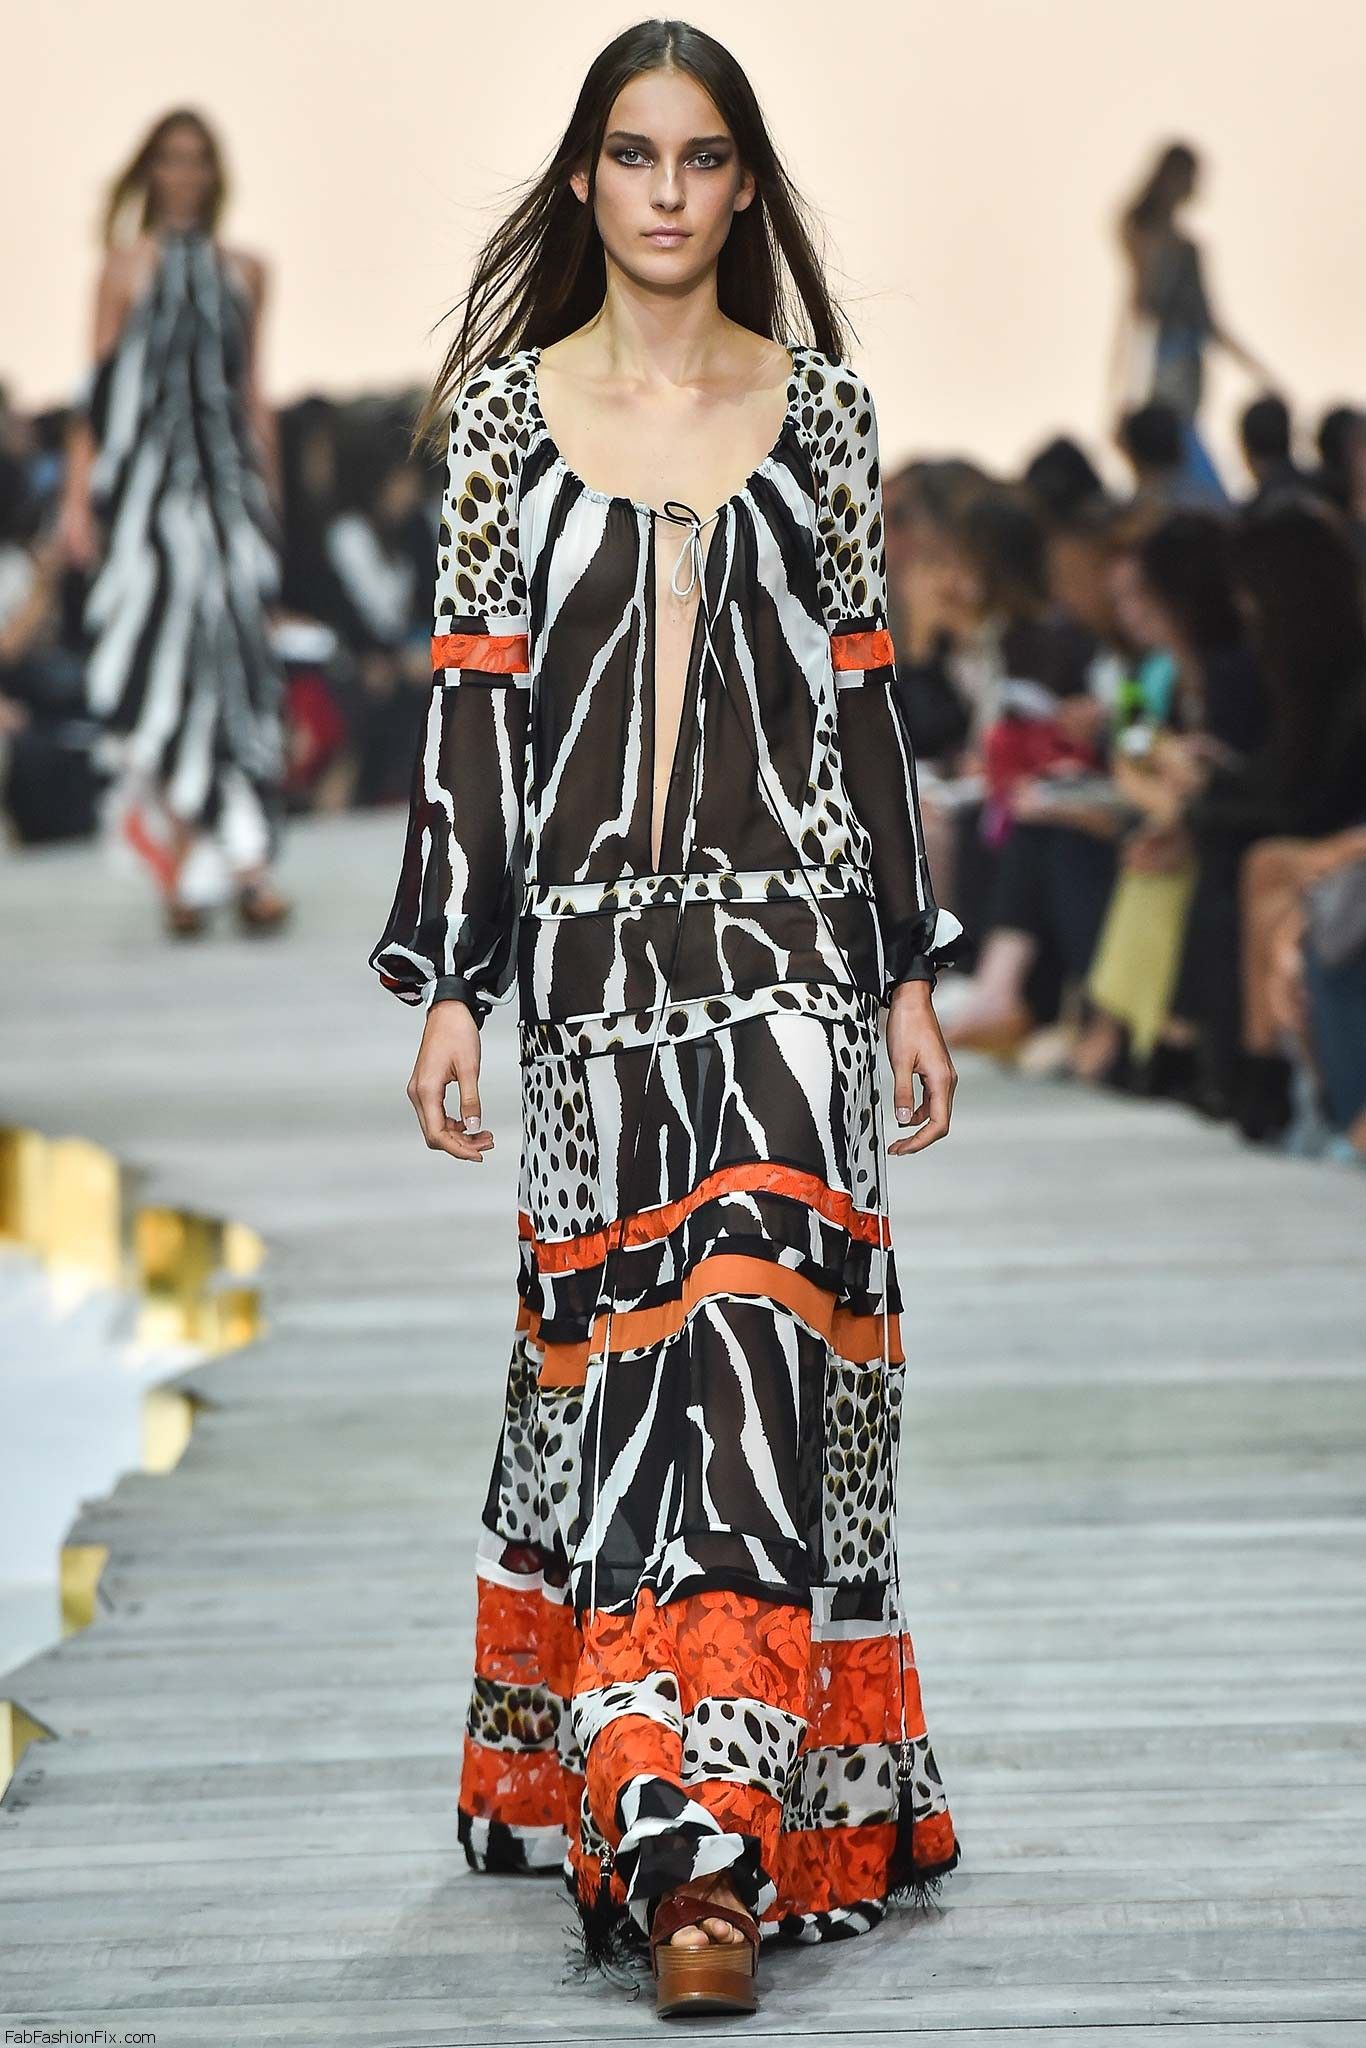 Roberto Cavalli spring/summer 2015 collection – Milan fashion week ...